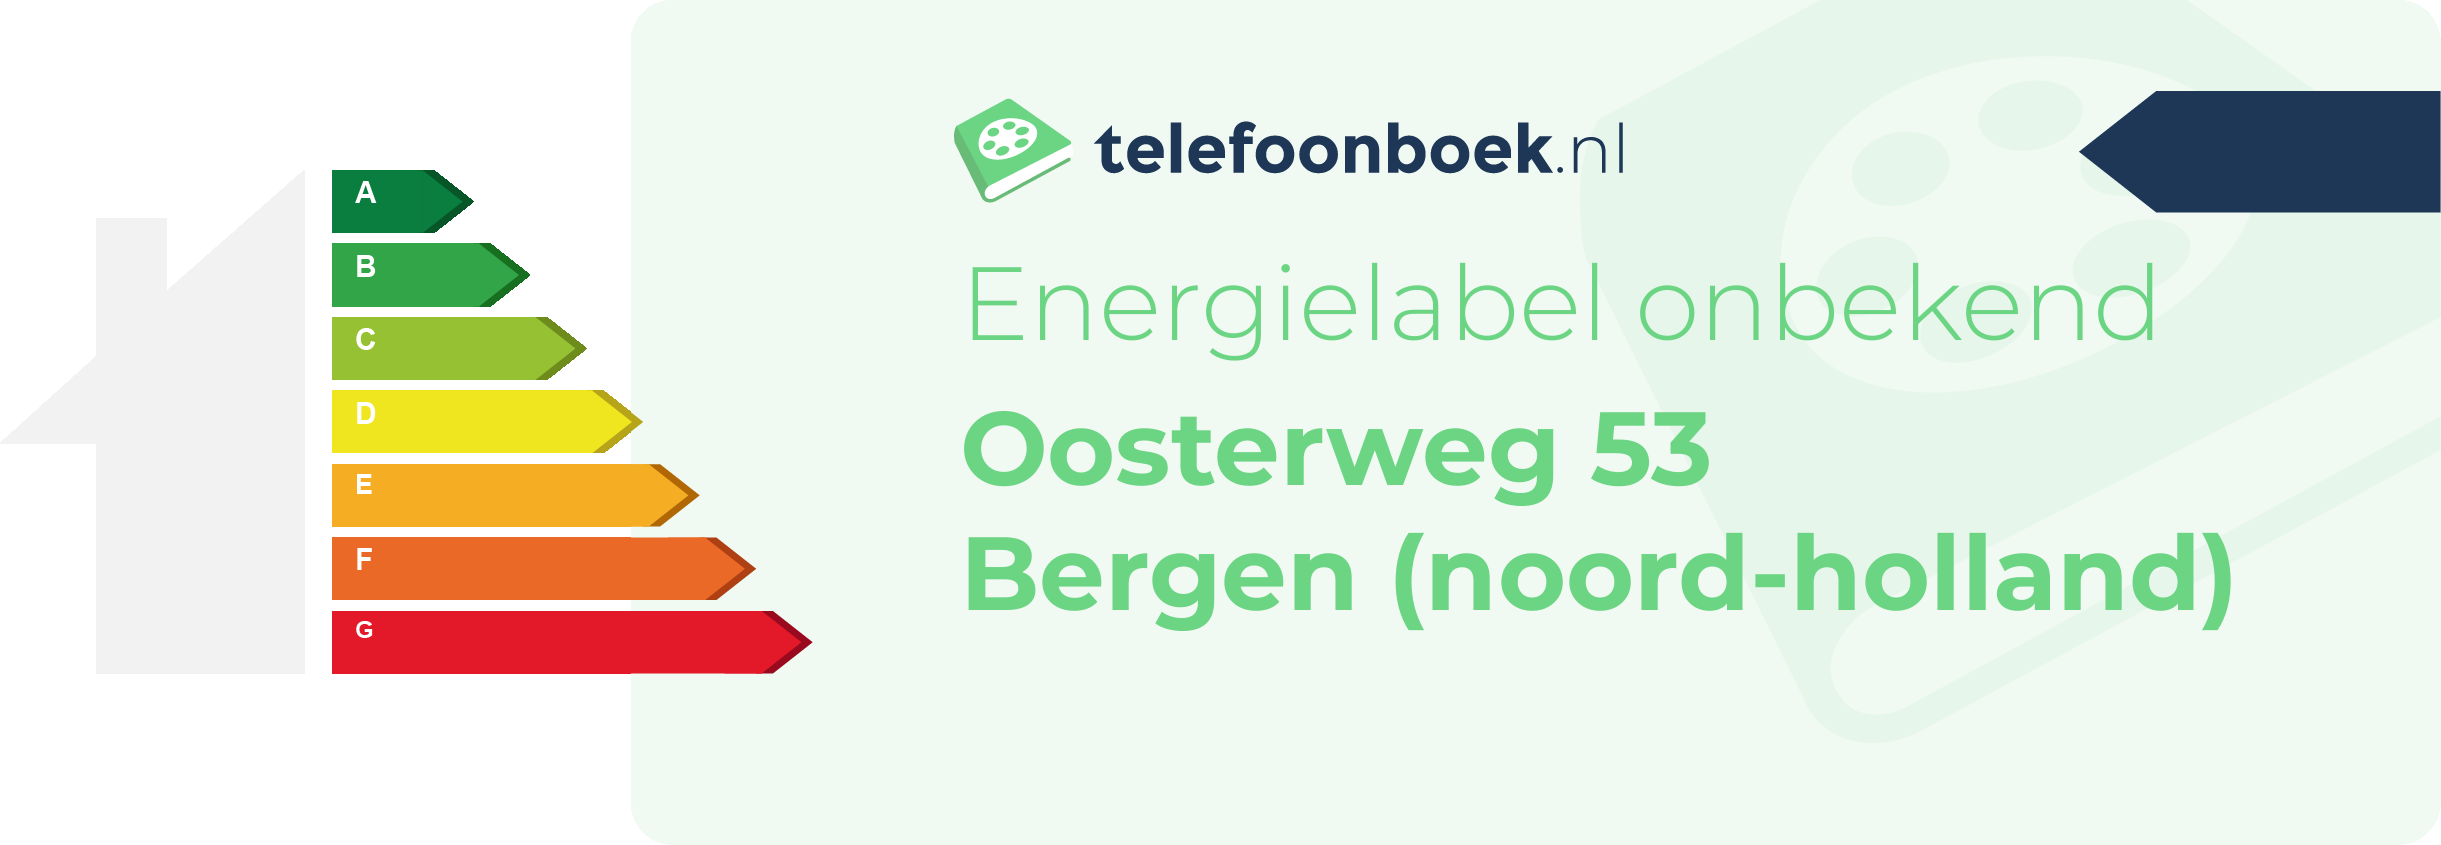 Energielabel Oosterweg 53 Bergen (Noord-Holland)